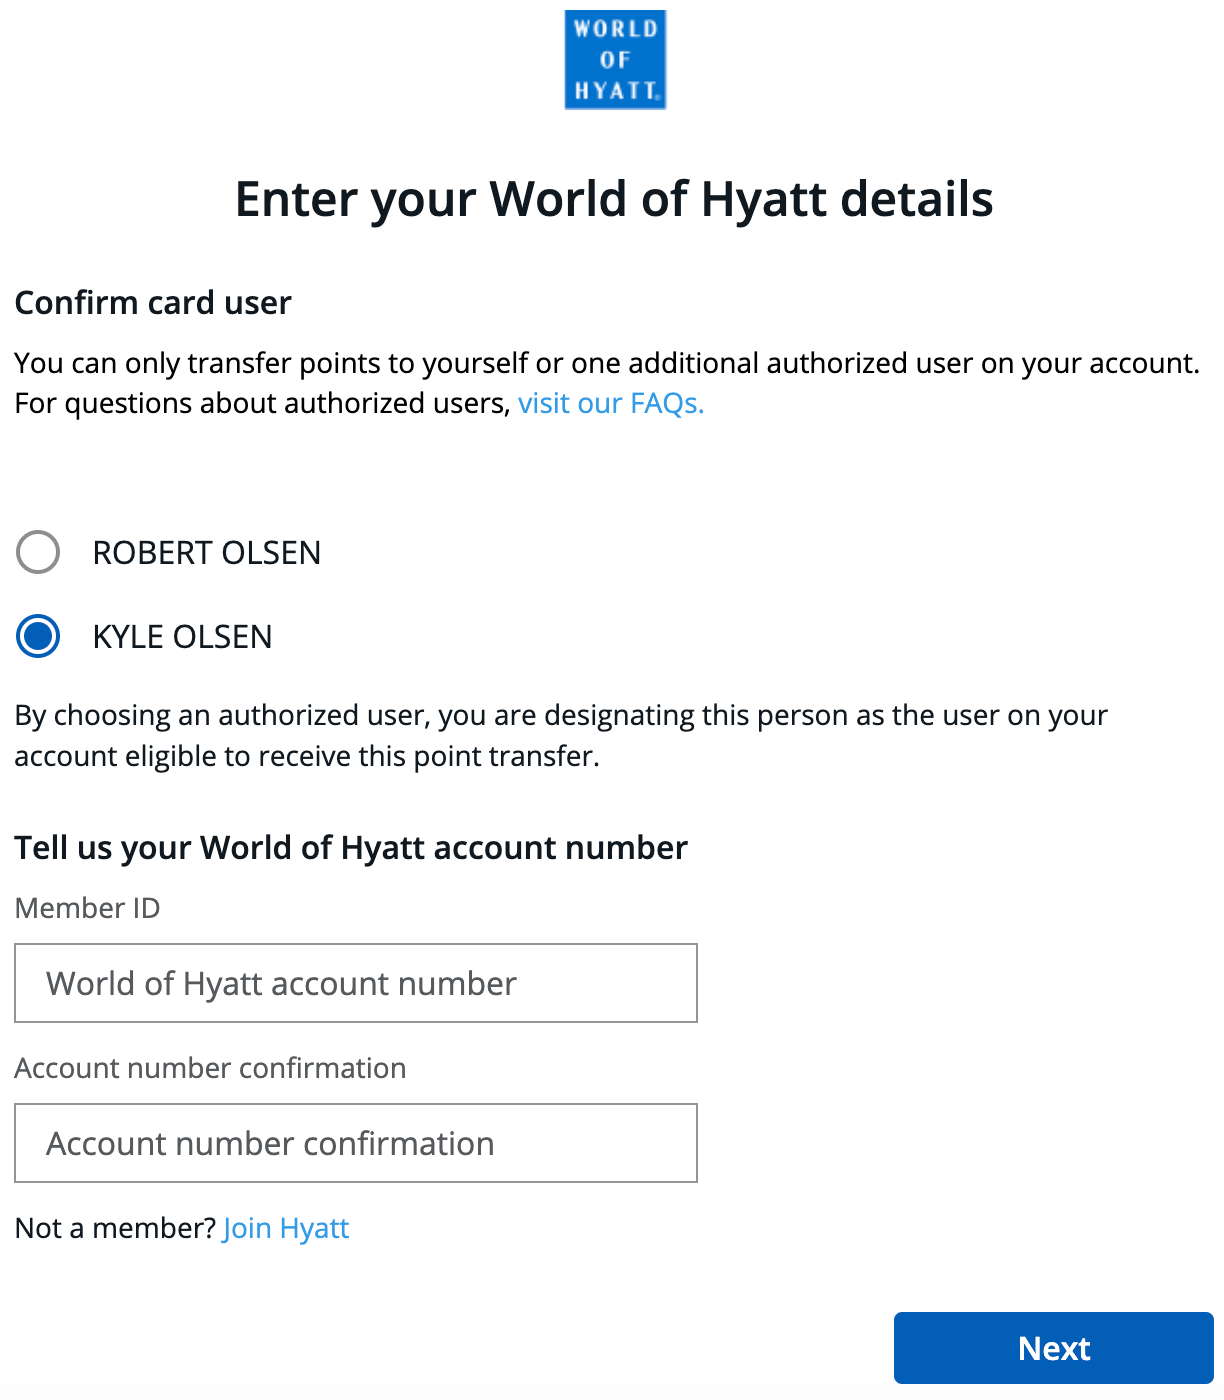 Enter Hyatt details on Chase